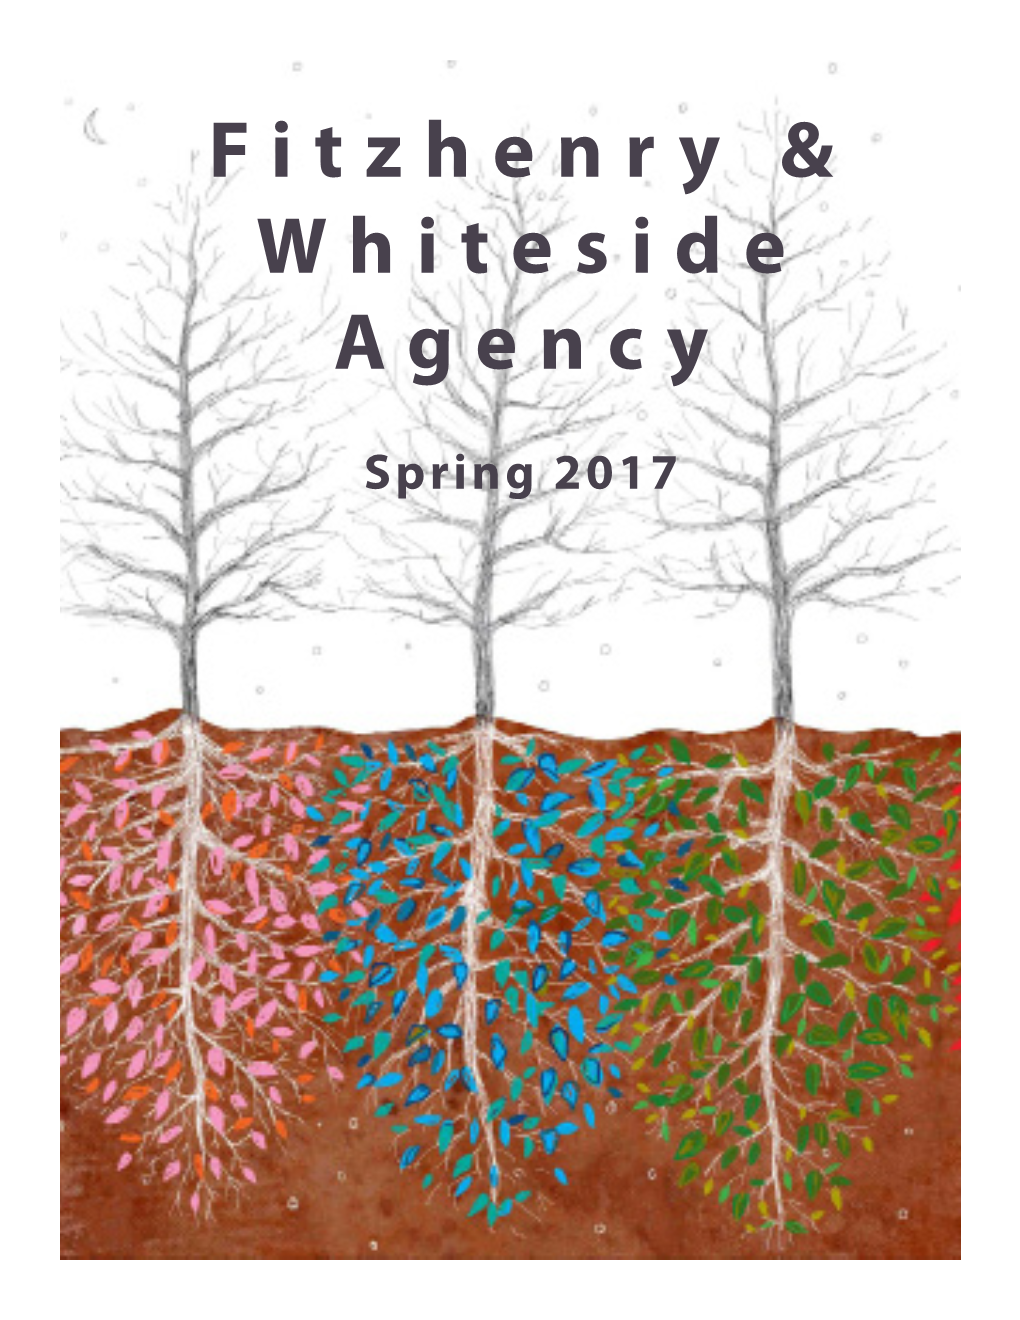 Fitzhenry & Whiteside Agency